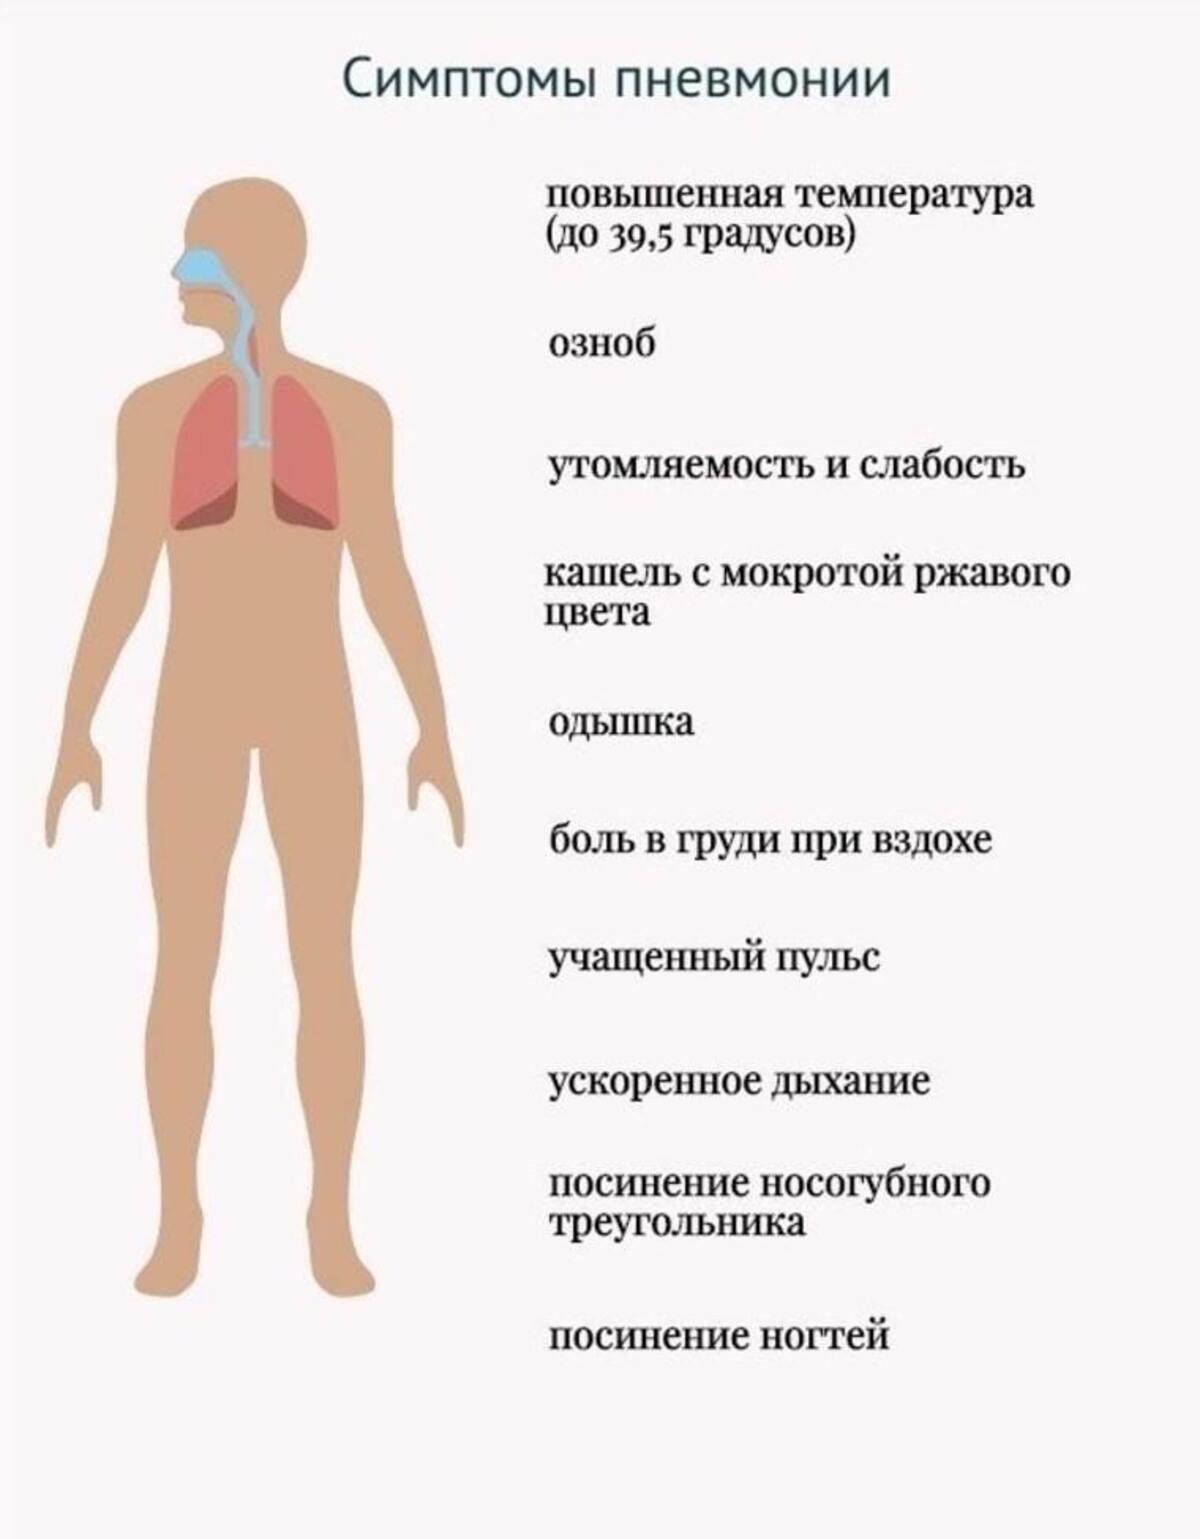 Пневмония симптомы